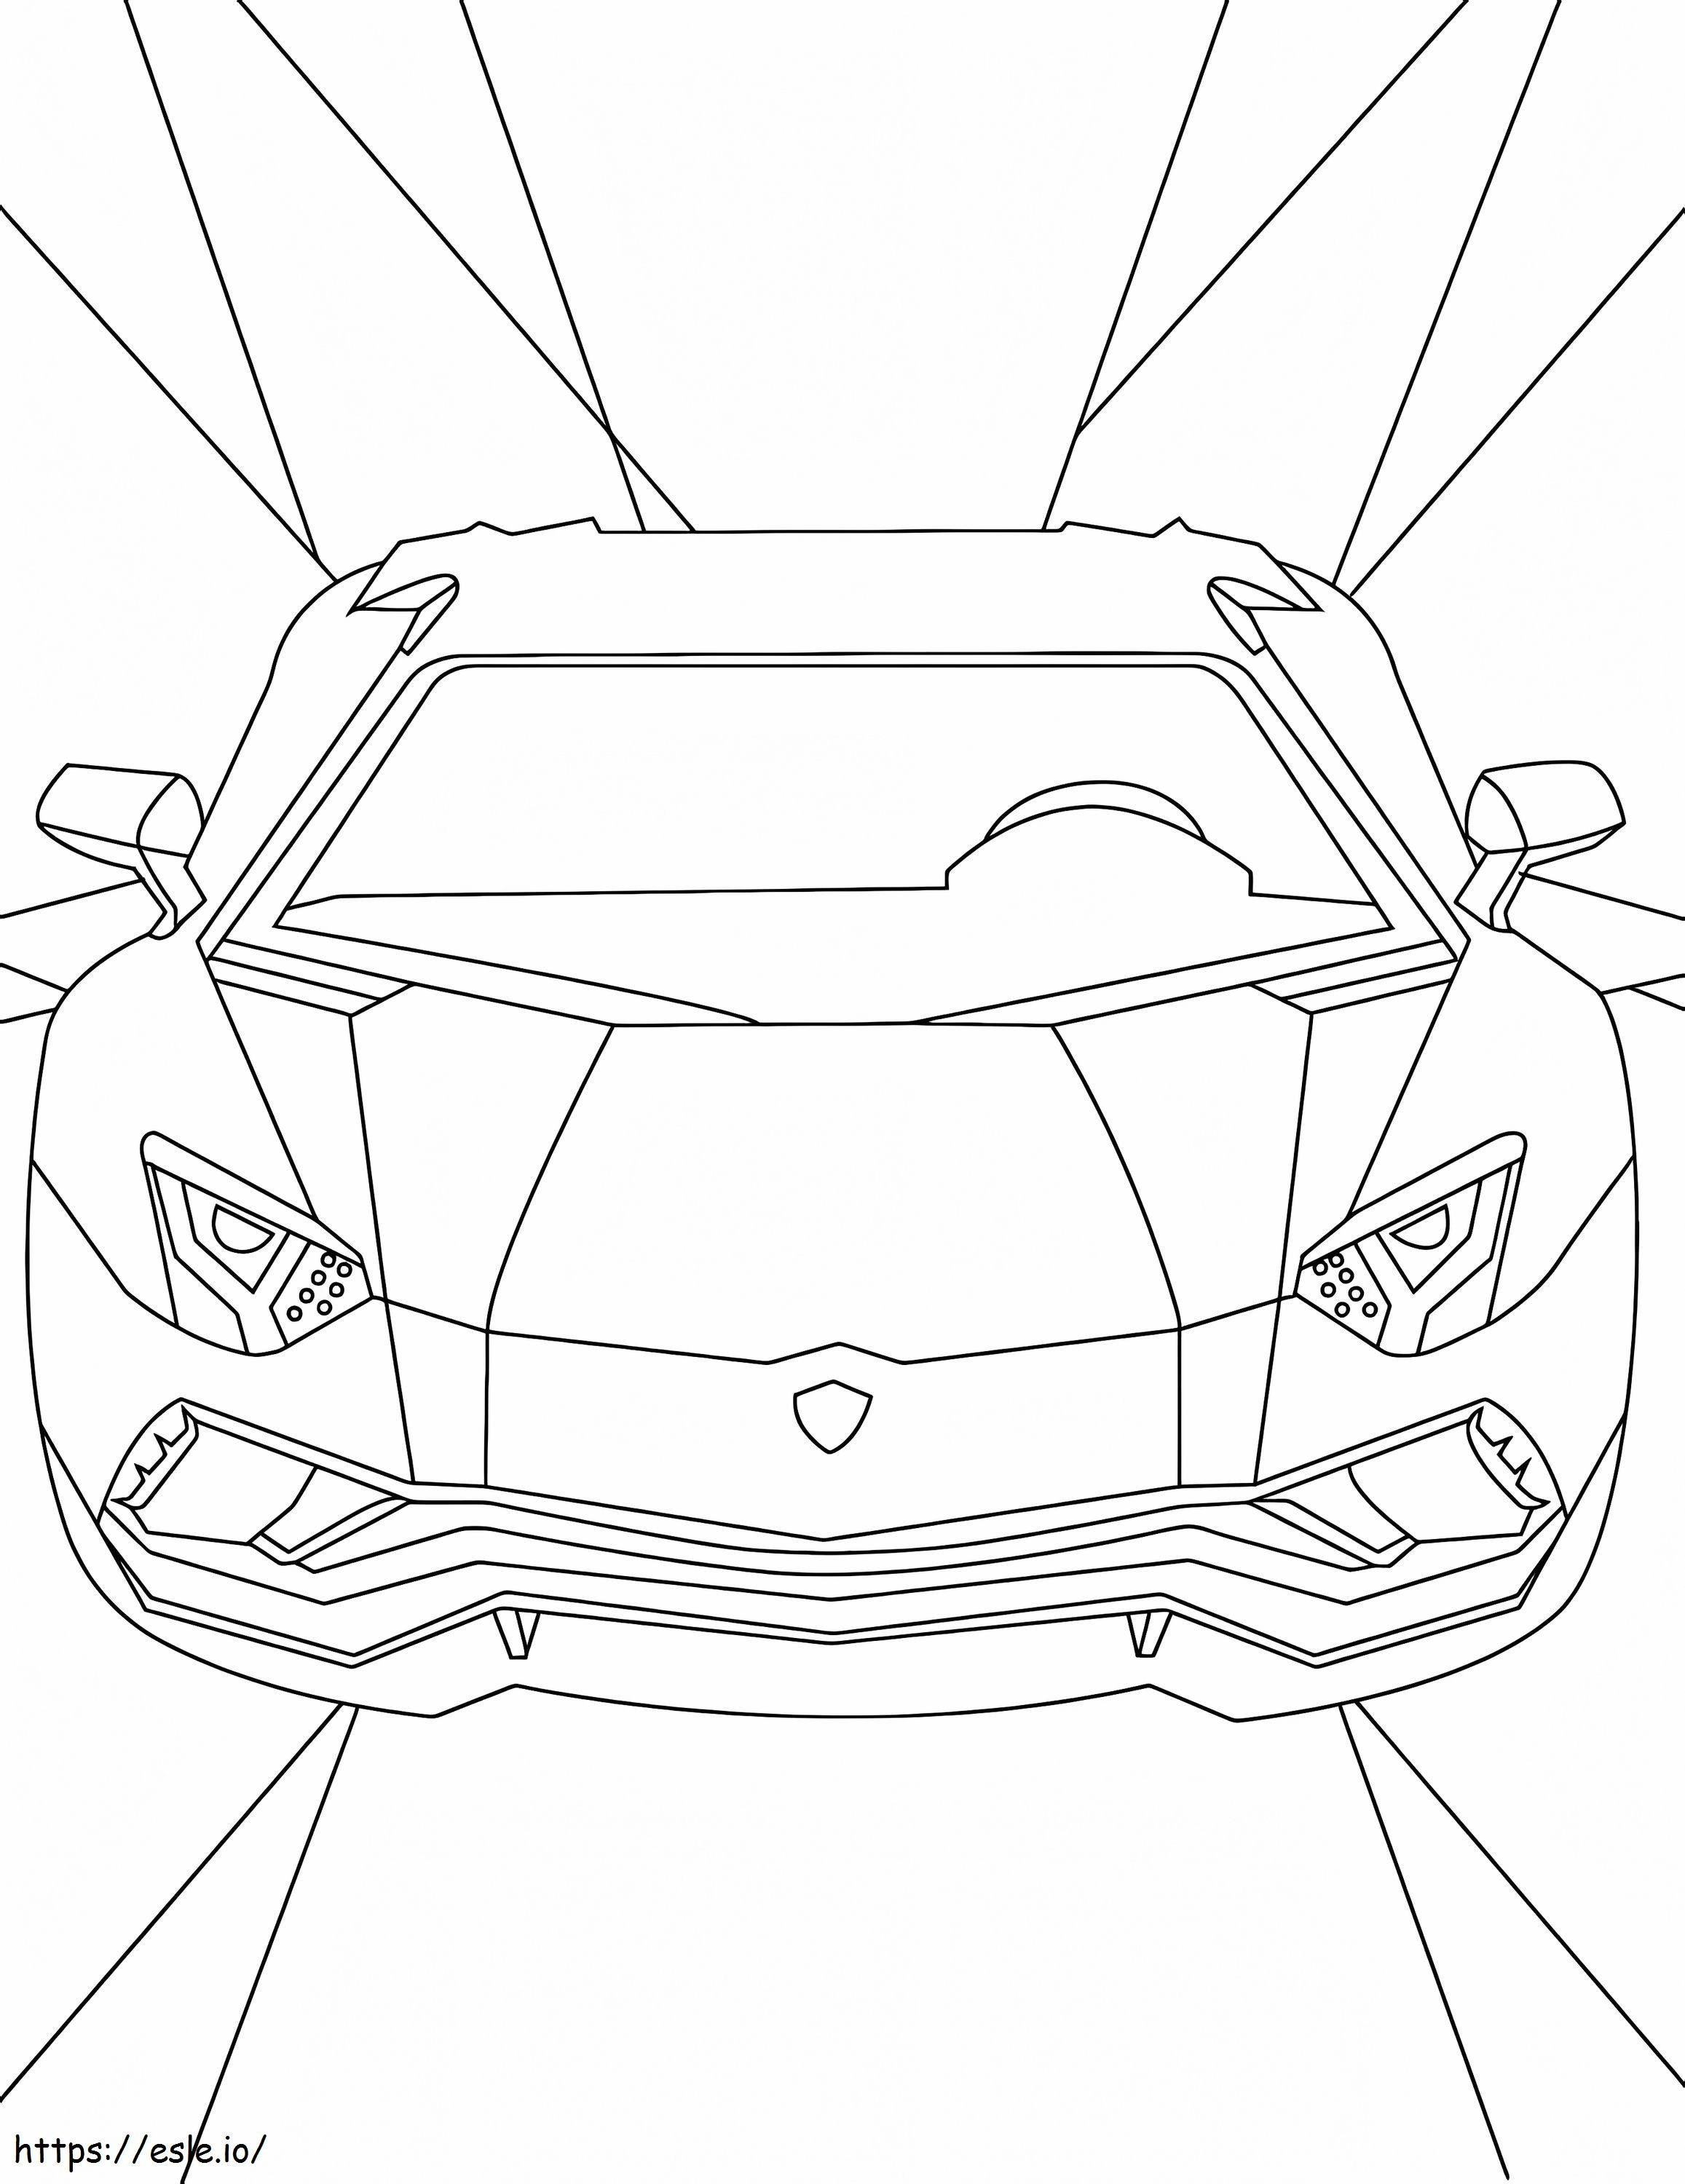 Ücretsiz Lamborghini boyama